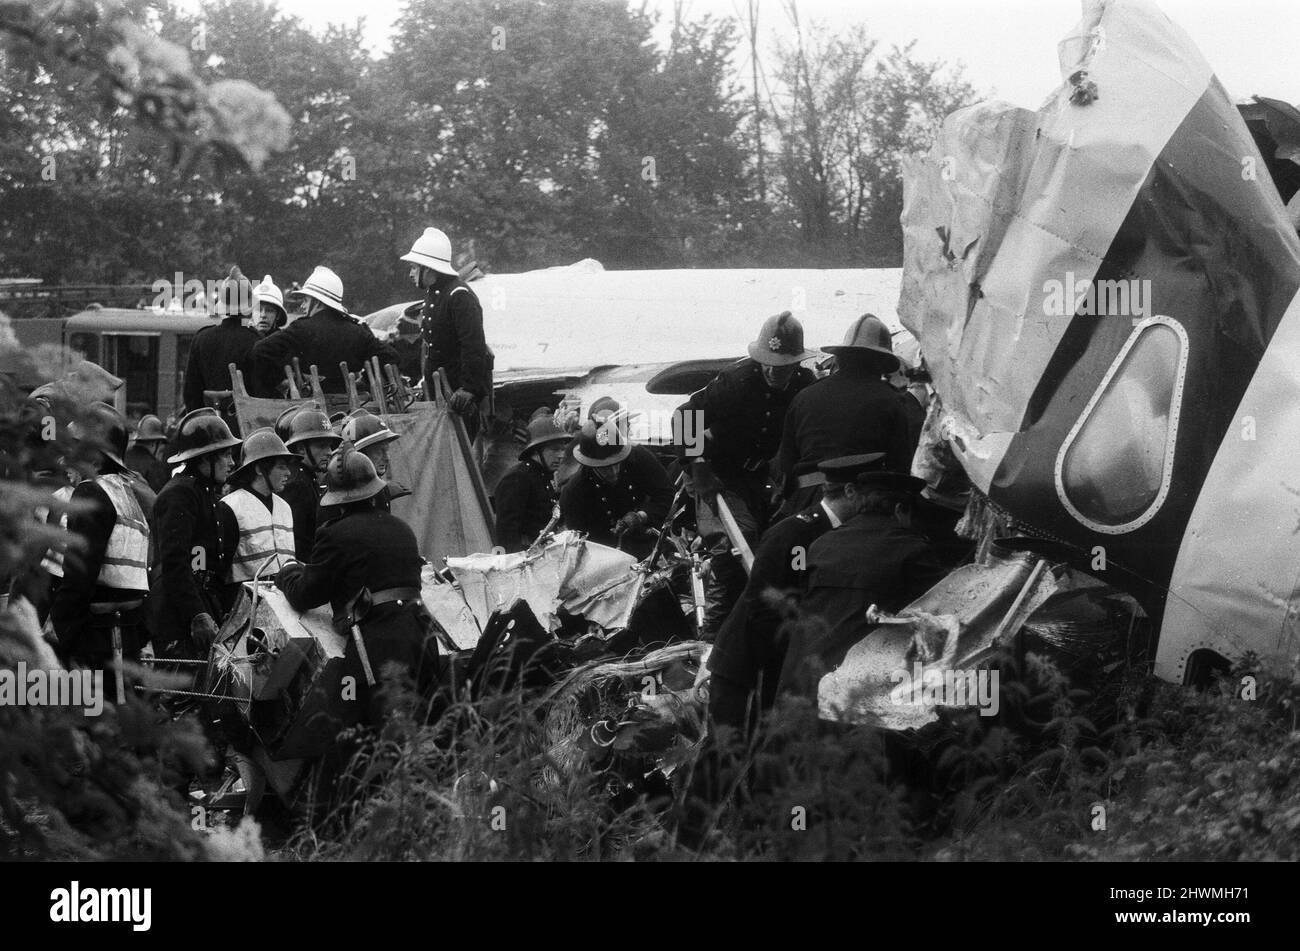 Der Passagierflug von British European Airways Flug 548 vom Flughafen London Heathrow nach Brüssel stürzte weniger als drei Minuten nach dem Start in der Nähe der Stadt Staines ab. Alle 118 Personen an Bord wurden getötet. Der Unfall wurde als Staines-Katastrophe bekannt. 18.. Juni 1972. Stockfoto